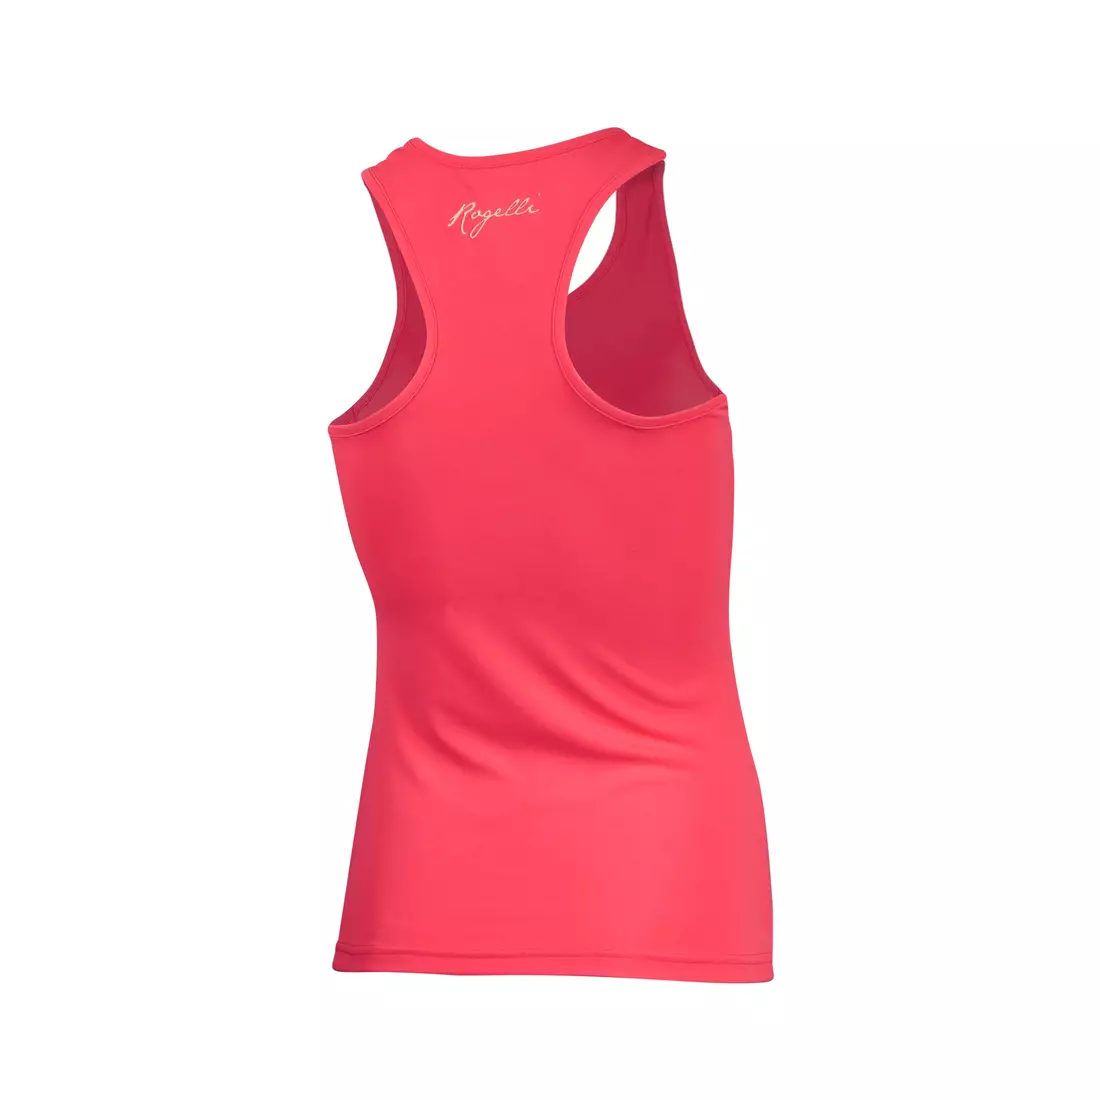 ROGELLI TANK TOP Women's running T-shirt, fluor pink 801.253